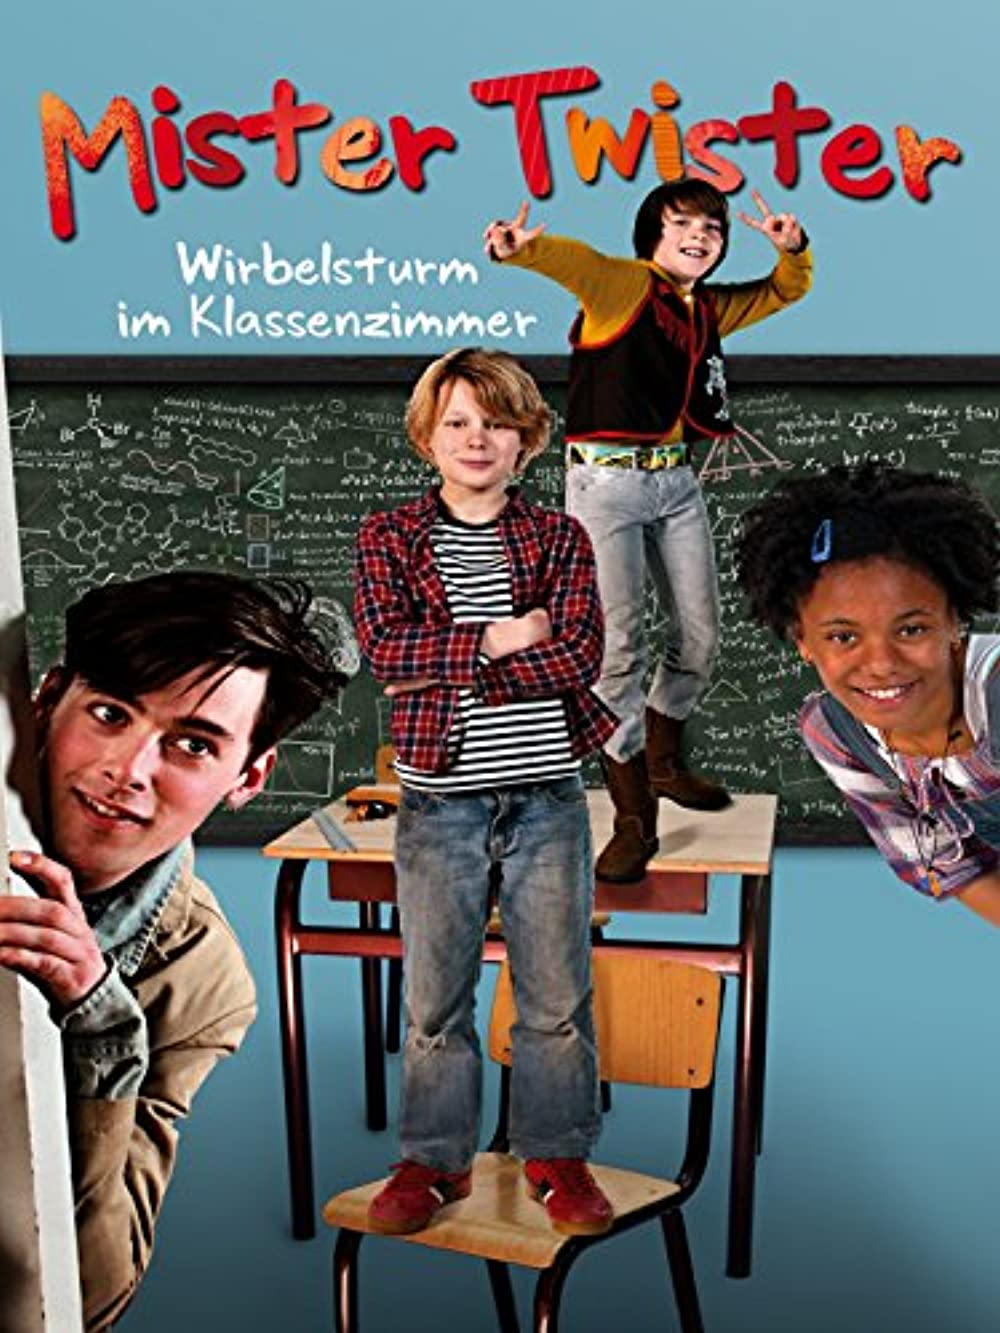 Filmbeschreibung zu Mister Twister - Wirbelsturm im Klassenzimmer